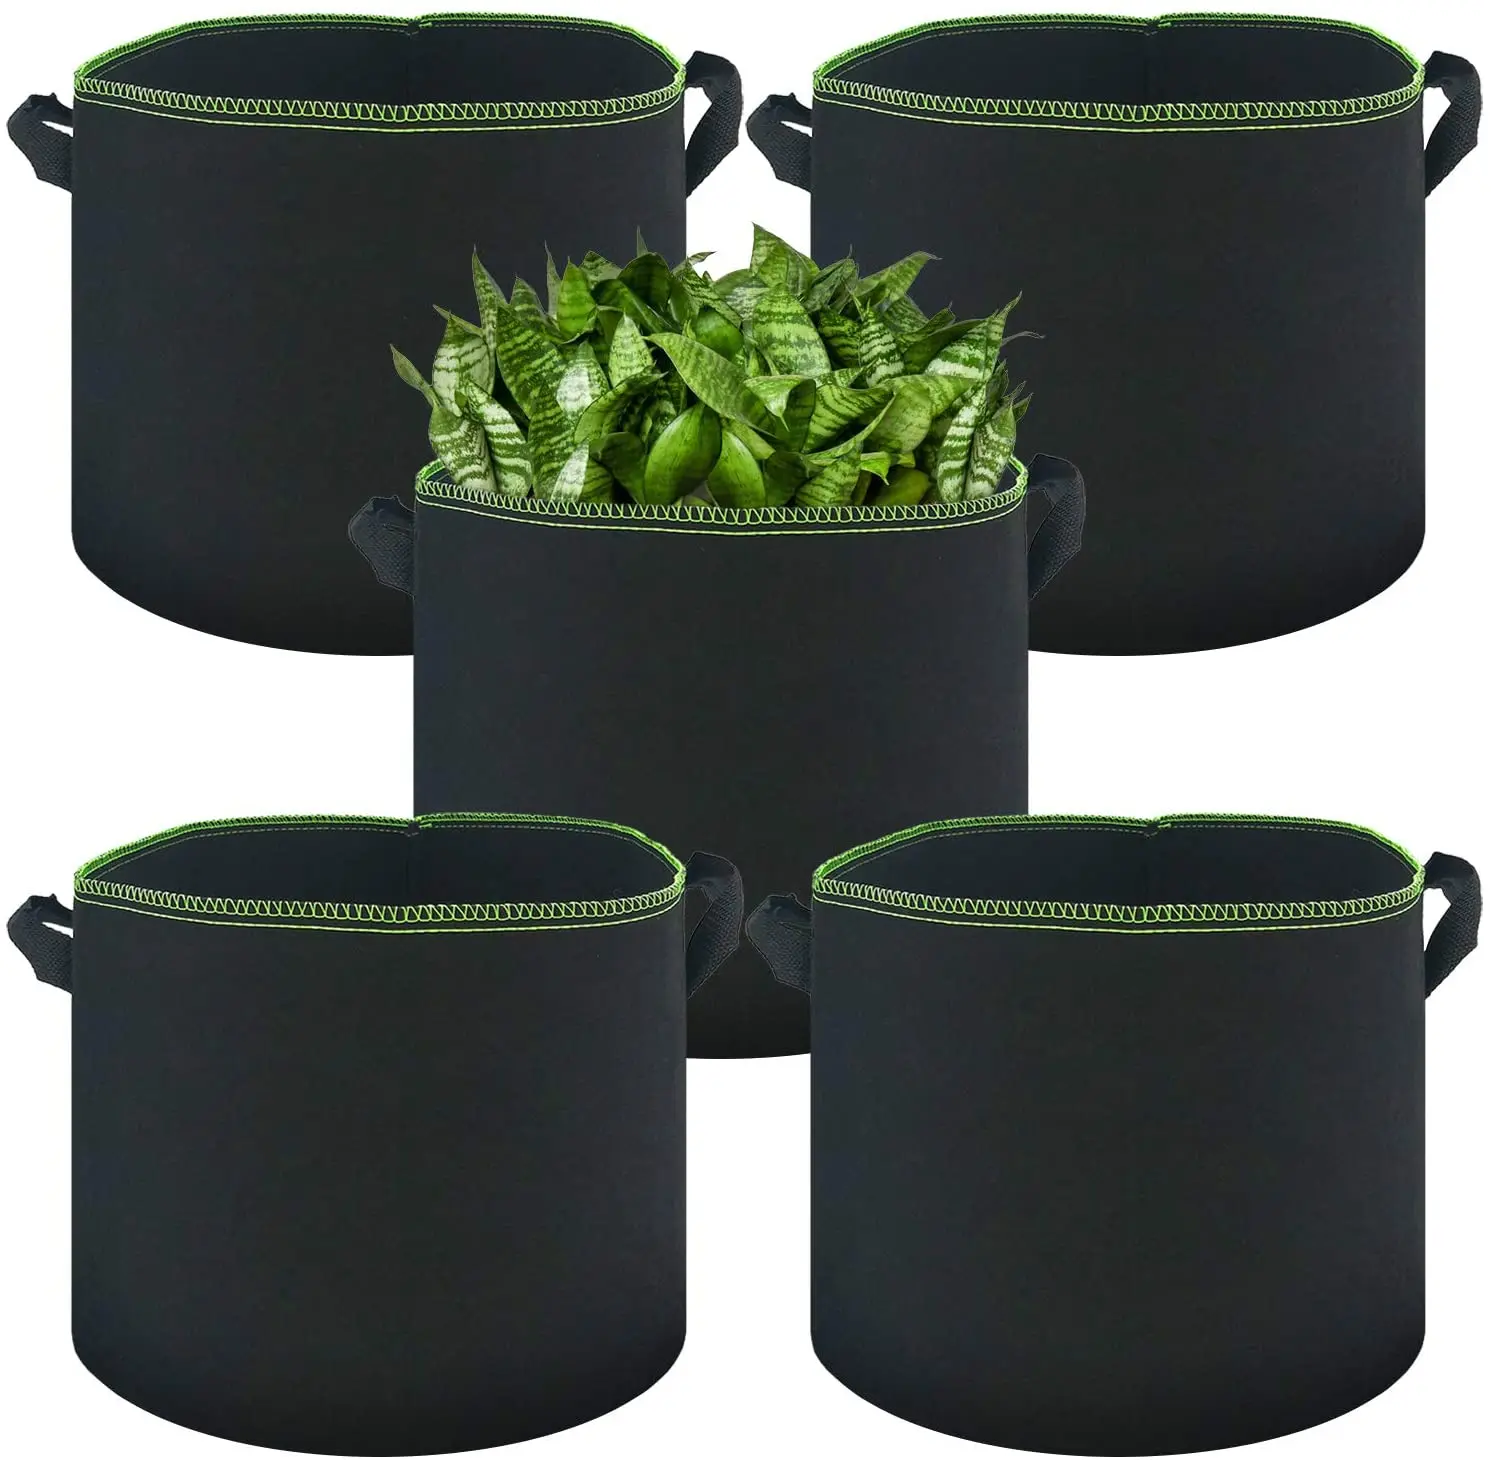 Cheap Customized 1 2 3 5 7 10 15 20 30 100 Gallon non woven felt fabric grow pots garden vegetable Fabric pot plant grow bags